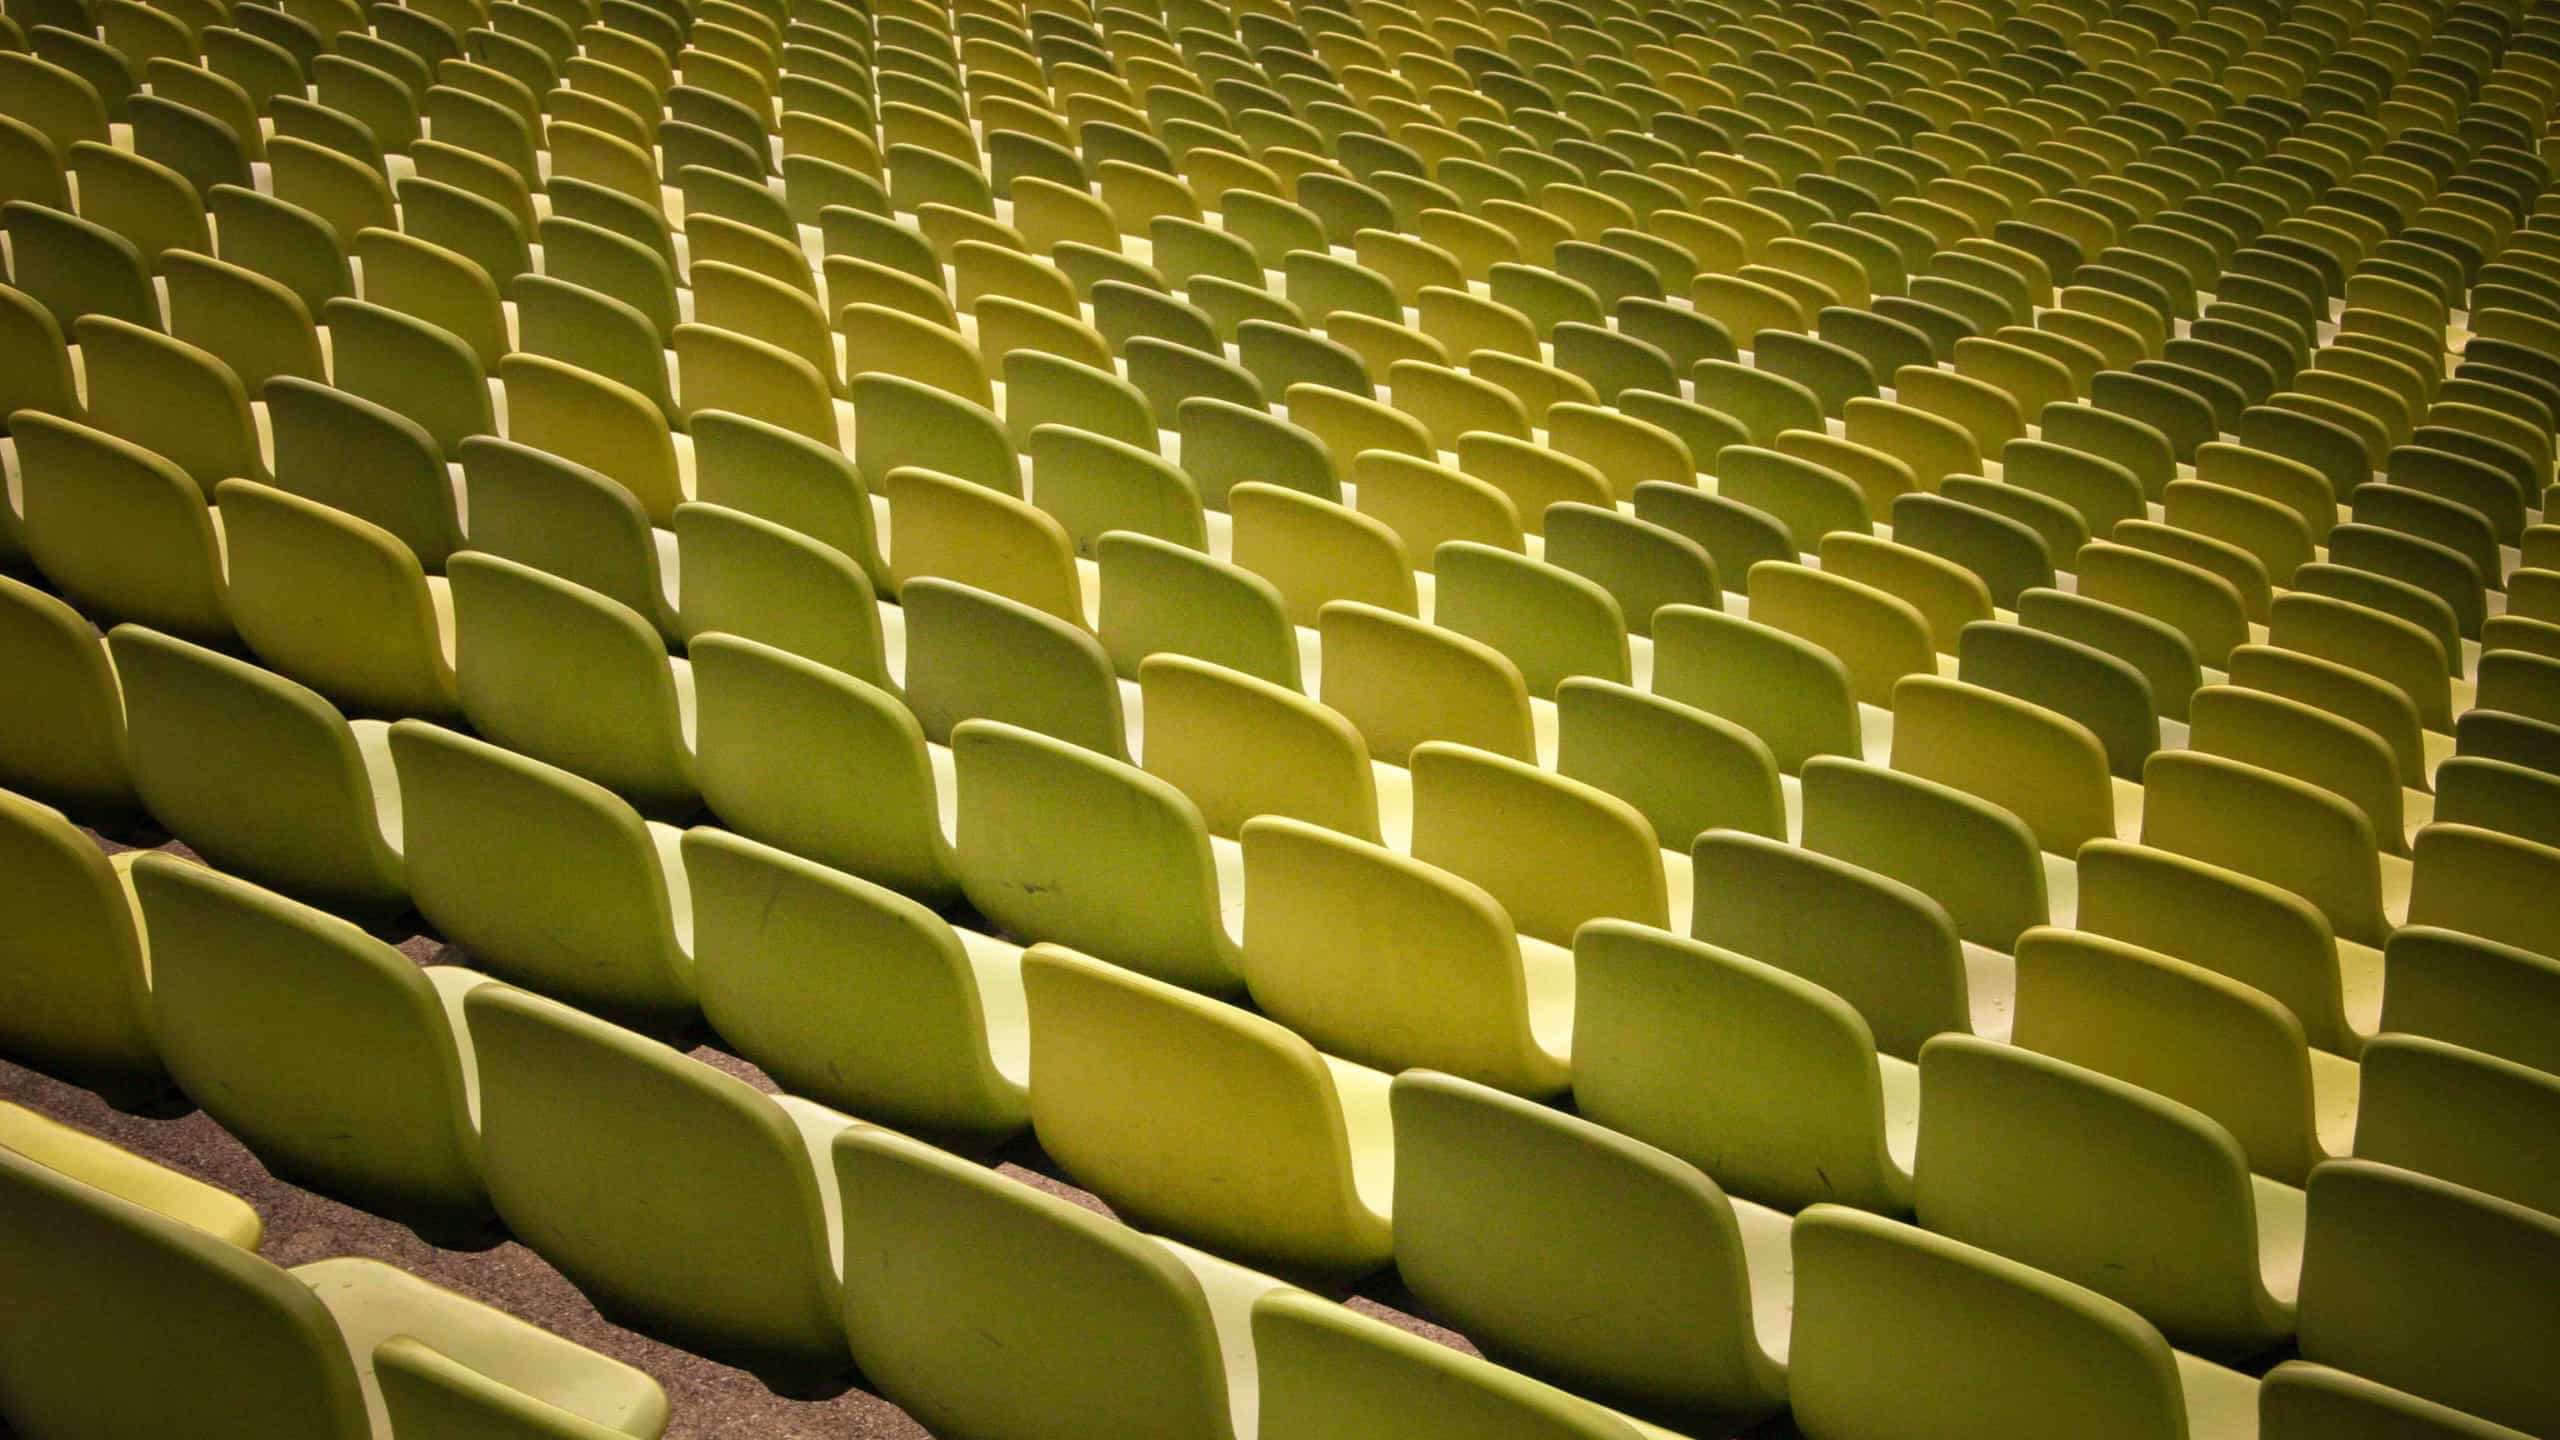 Green stadium chairs